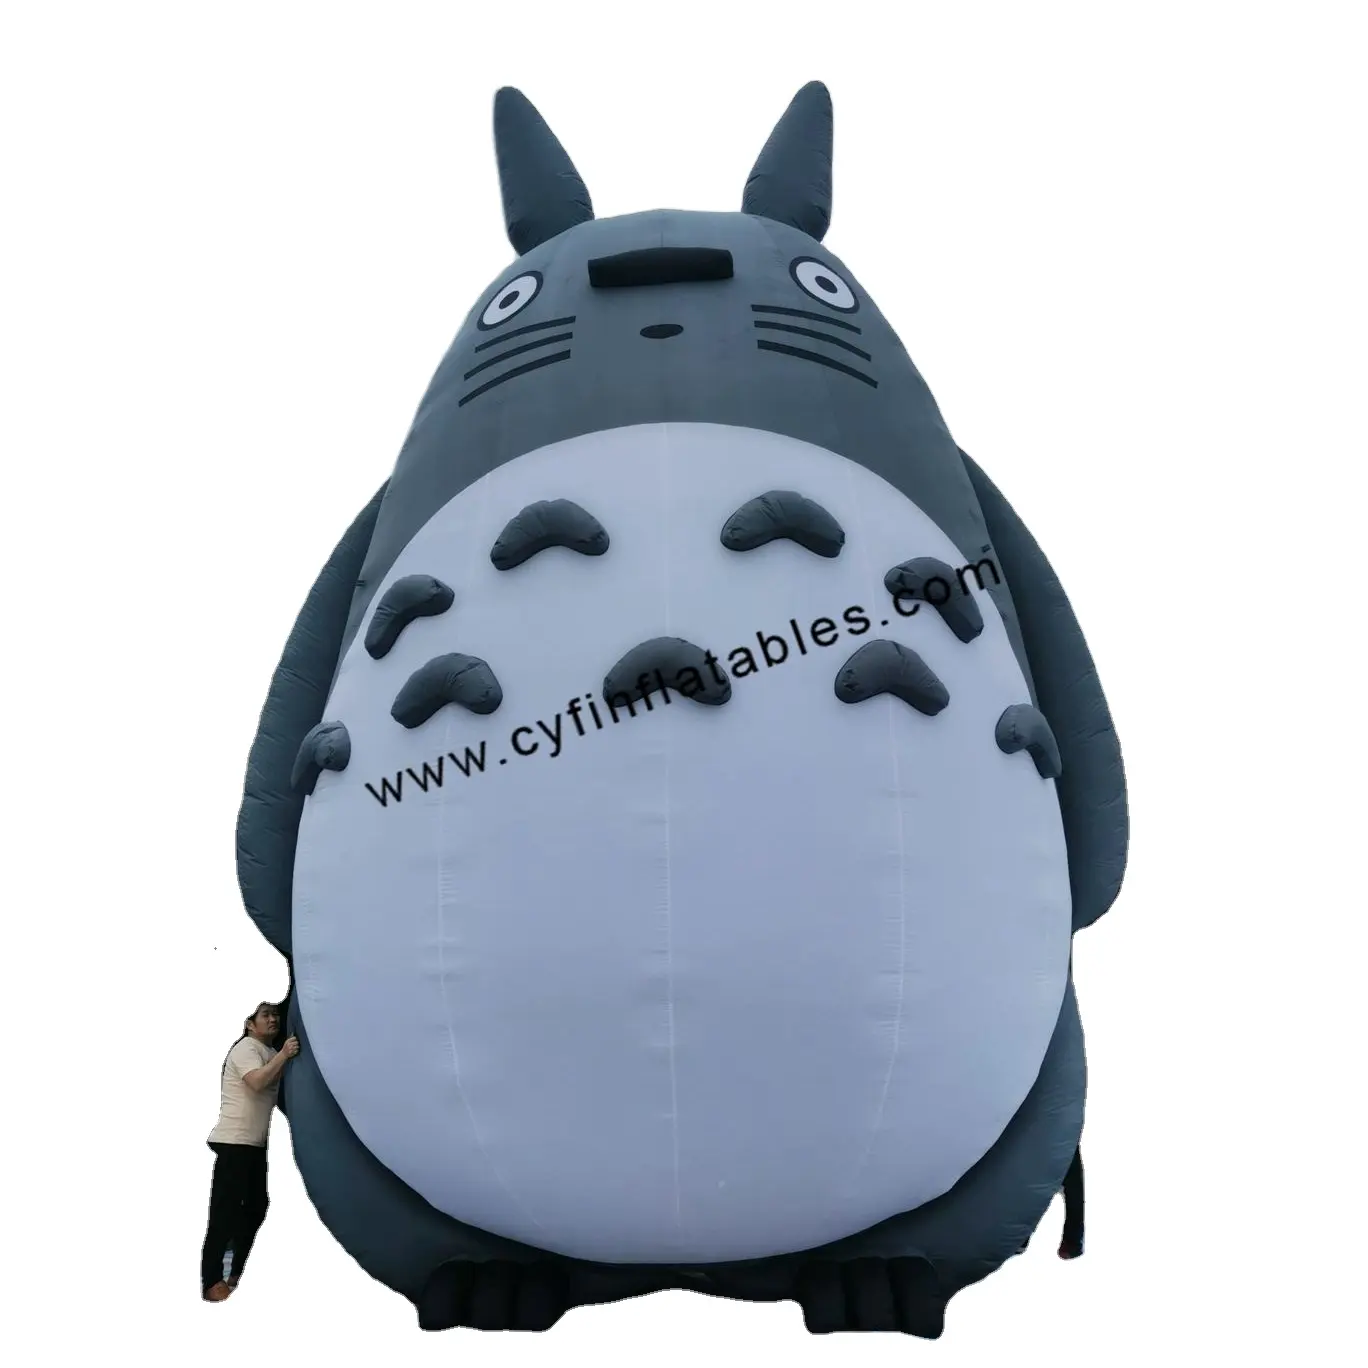 Totoro gonfiabile del fumetto della mascotte di film gonfiabile della decorazione di pubblicità per l'evento